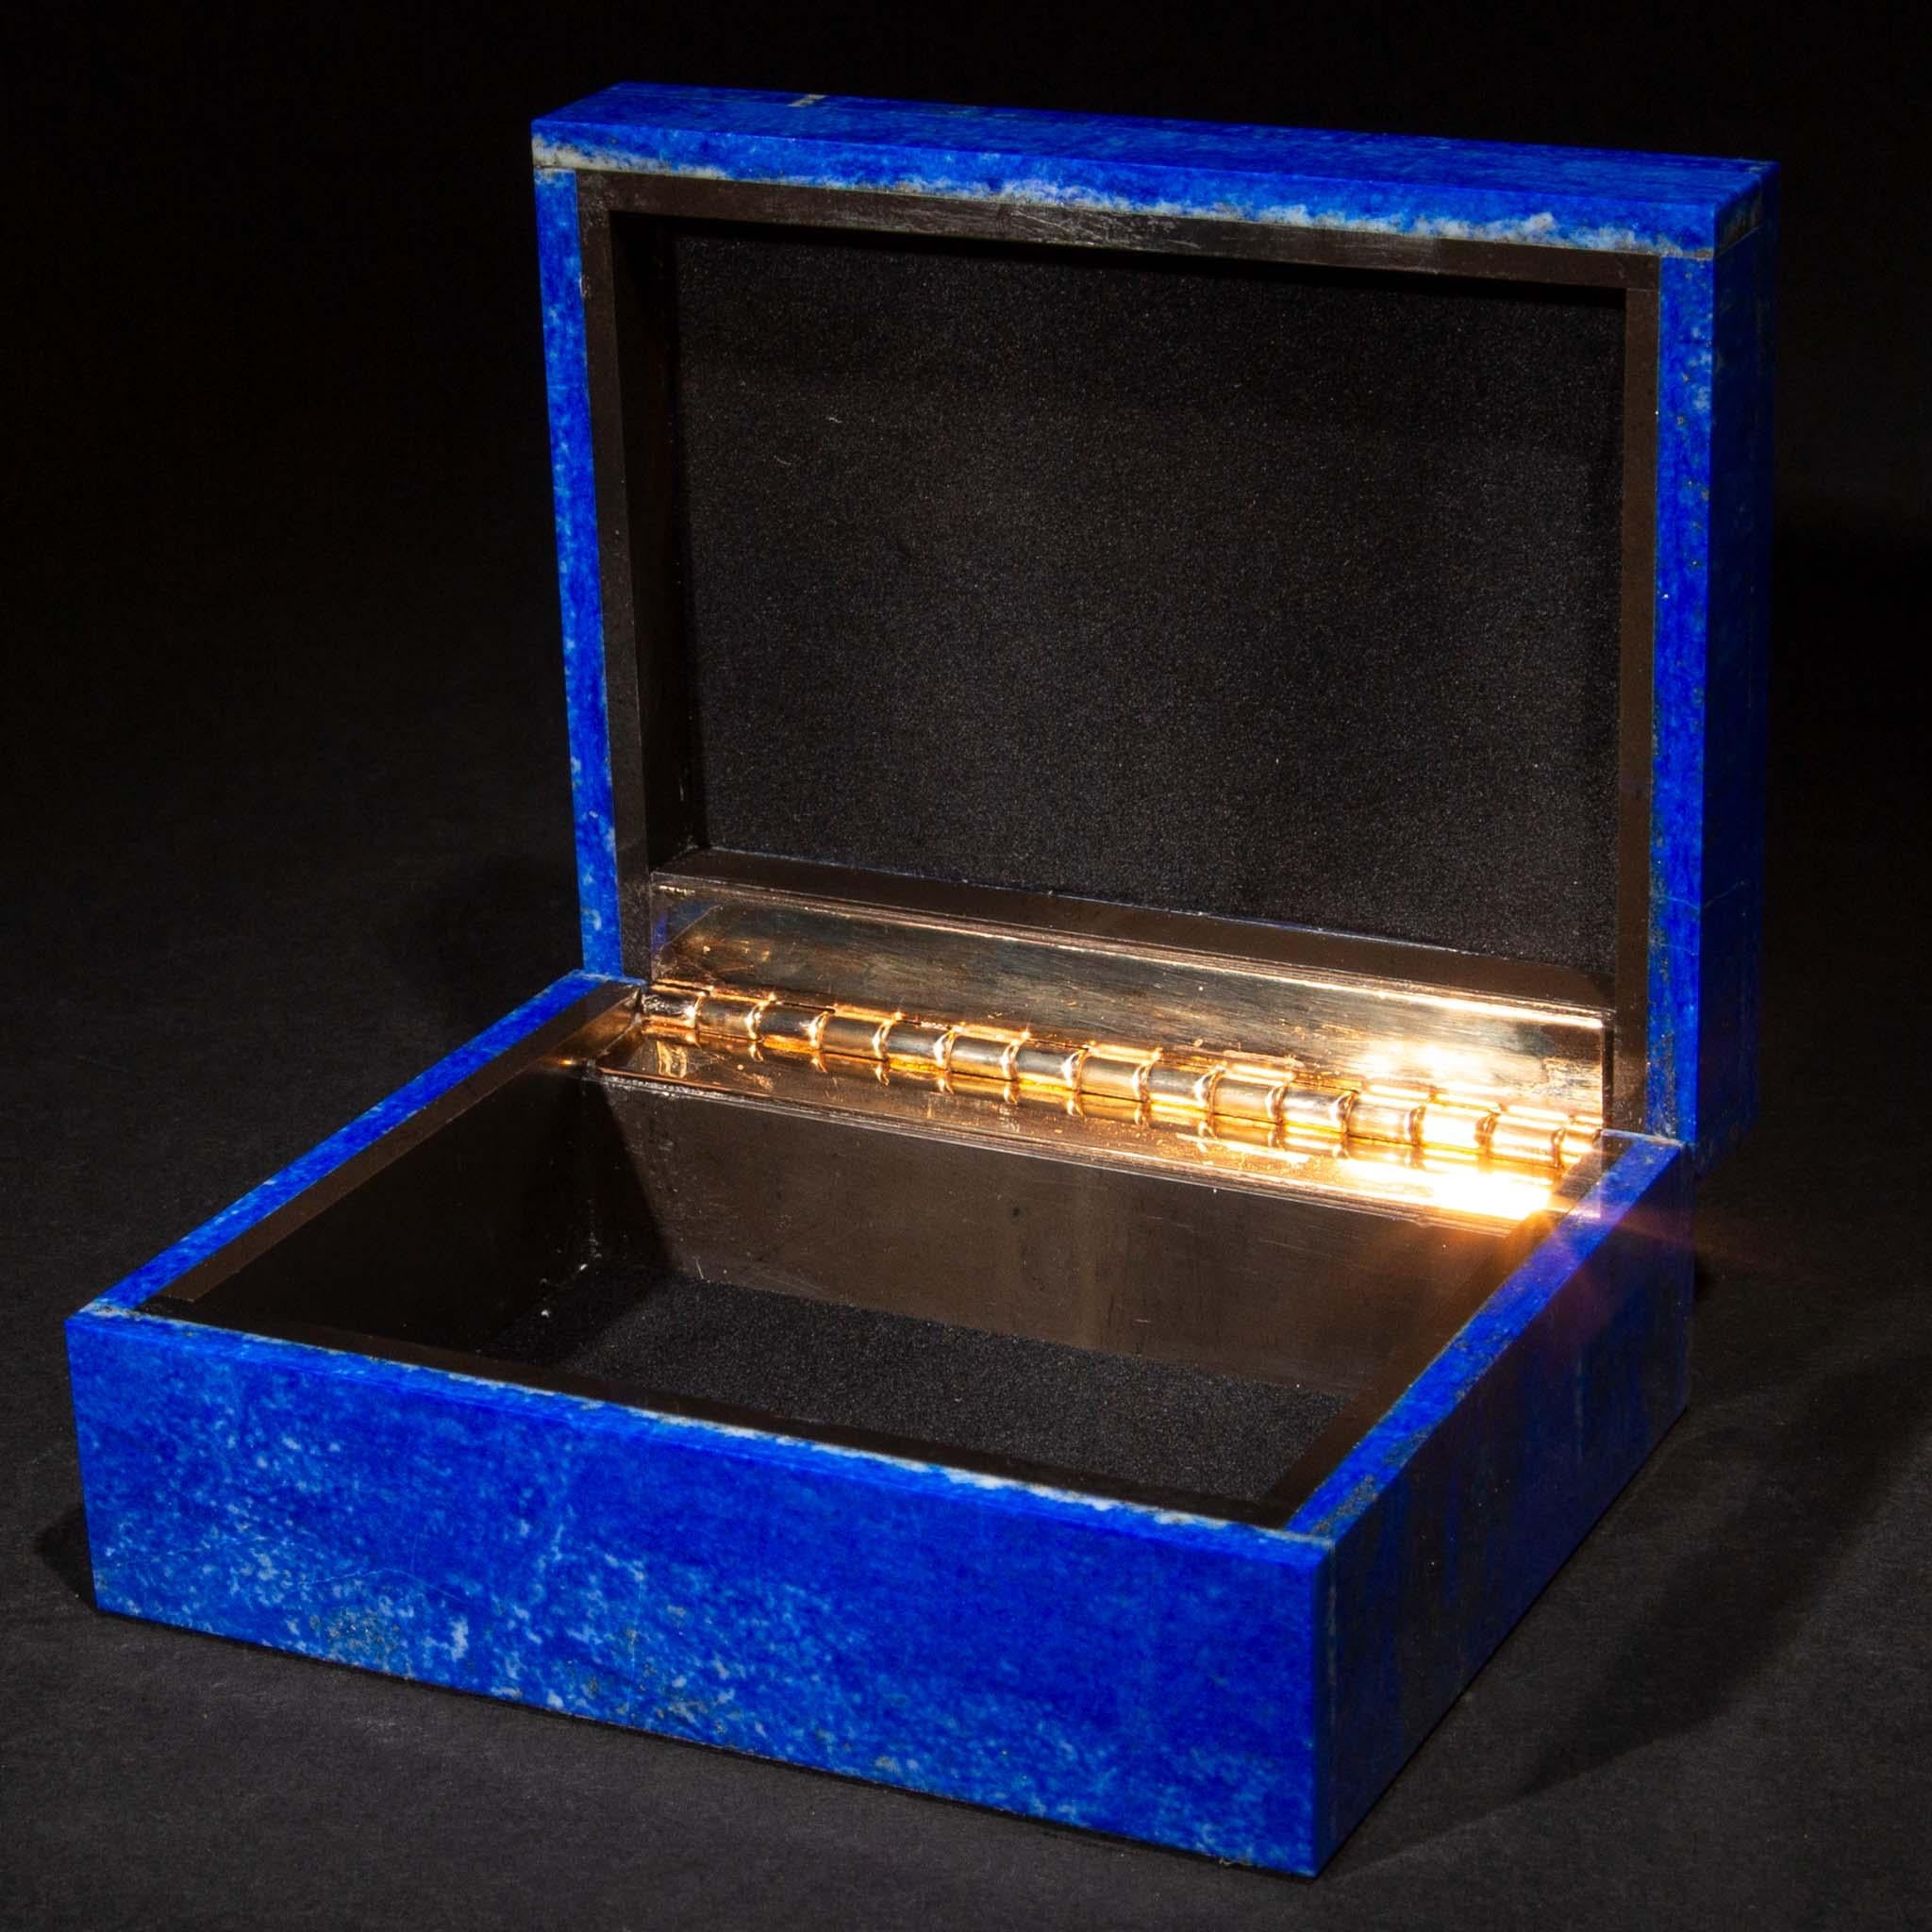 Boîtes à charnières en lapis-lazuli. Extraits en Afghanistan, ils ont ensuite été taillés, polis et créés pour nous en Inde. Le lapis est prisé depuis l'Antiquité pour sa couleur bleue caractéristique et ses mouchetures d'or. C'était aussi le